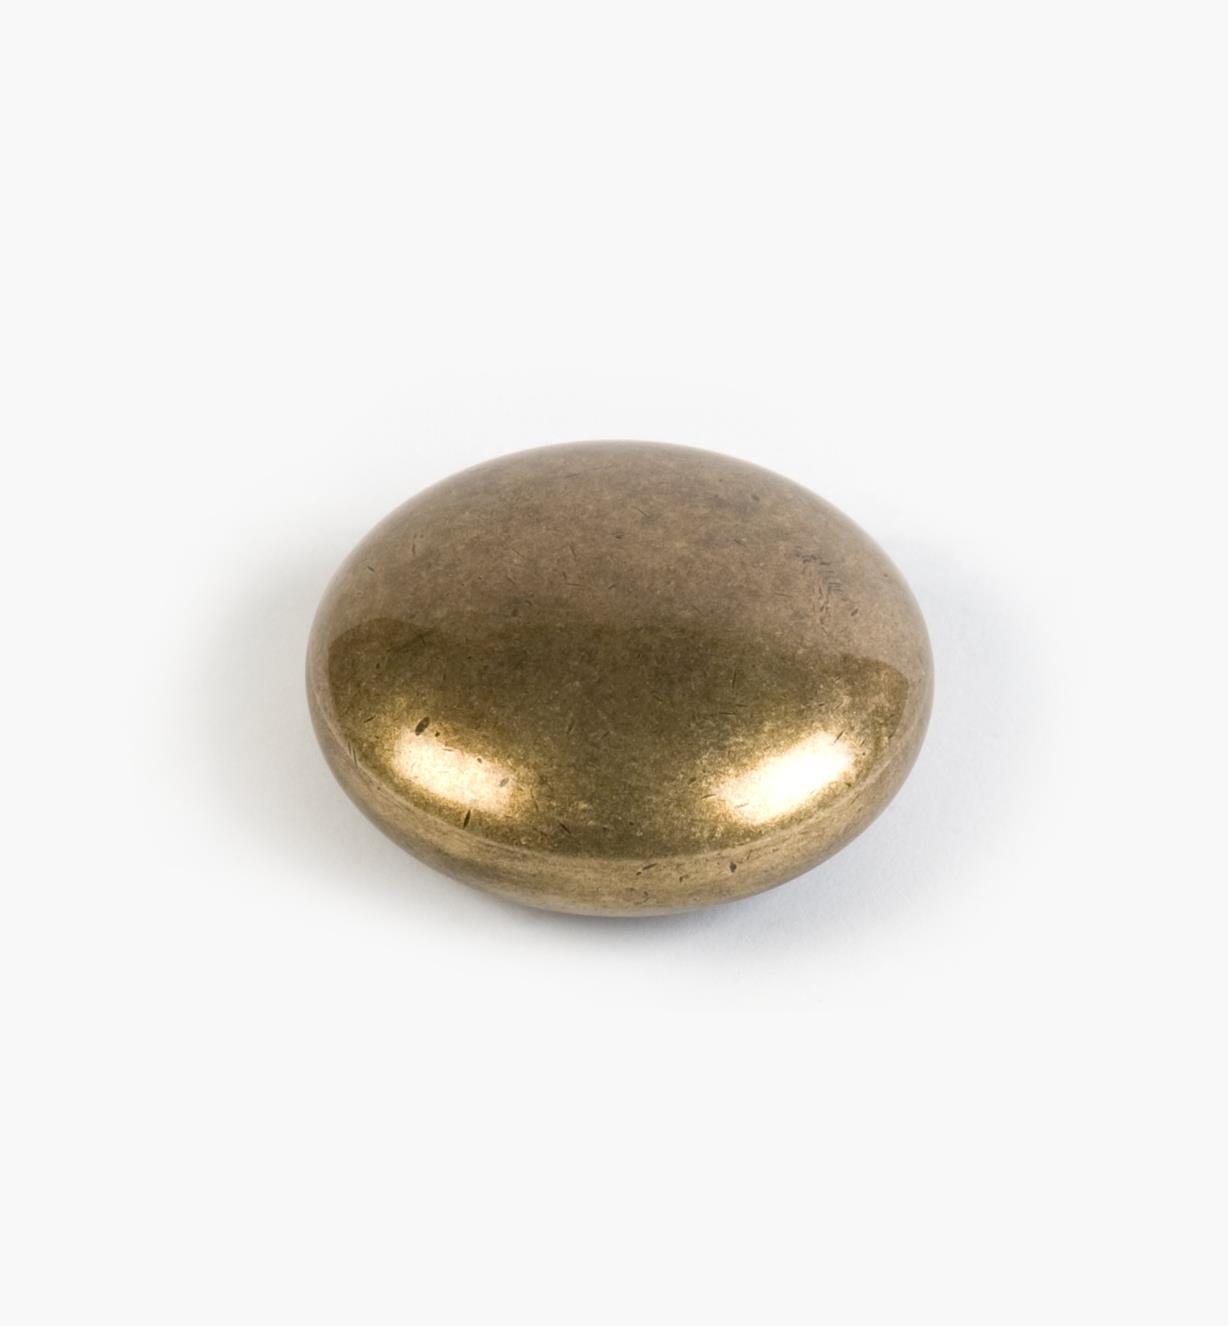 01G1613 - 60mm x 27mm Round Antique Brass Stone Pull